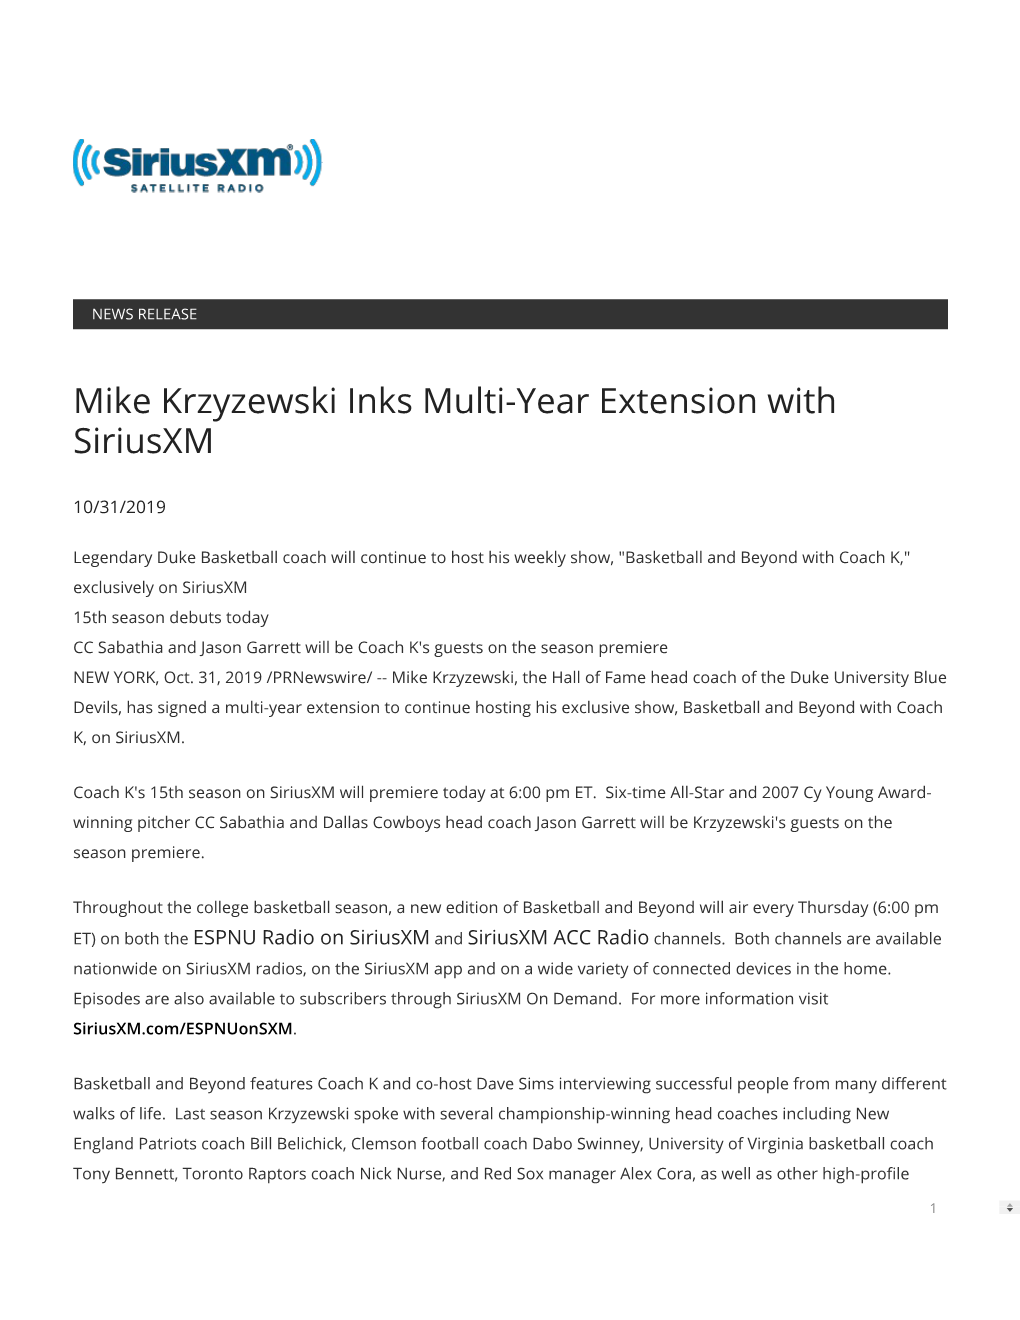 Mike Krzyzewski Inks Multi-Year Extension with Siriusxm